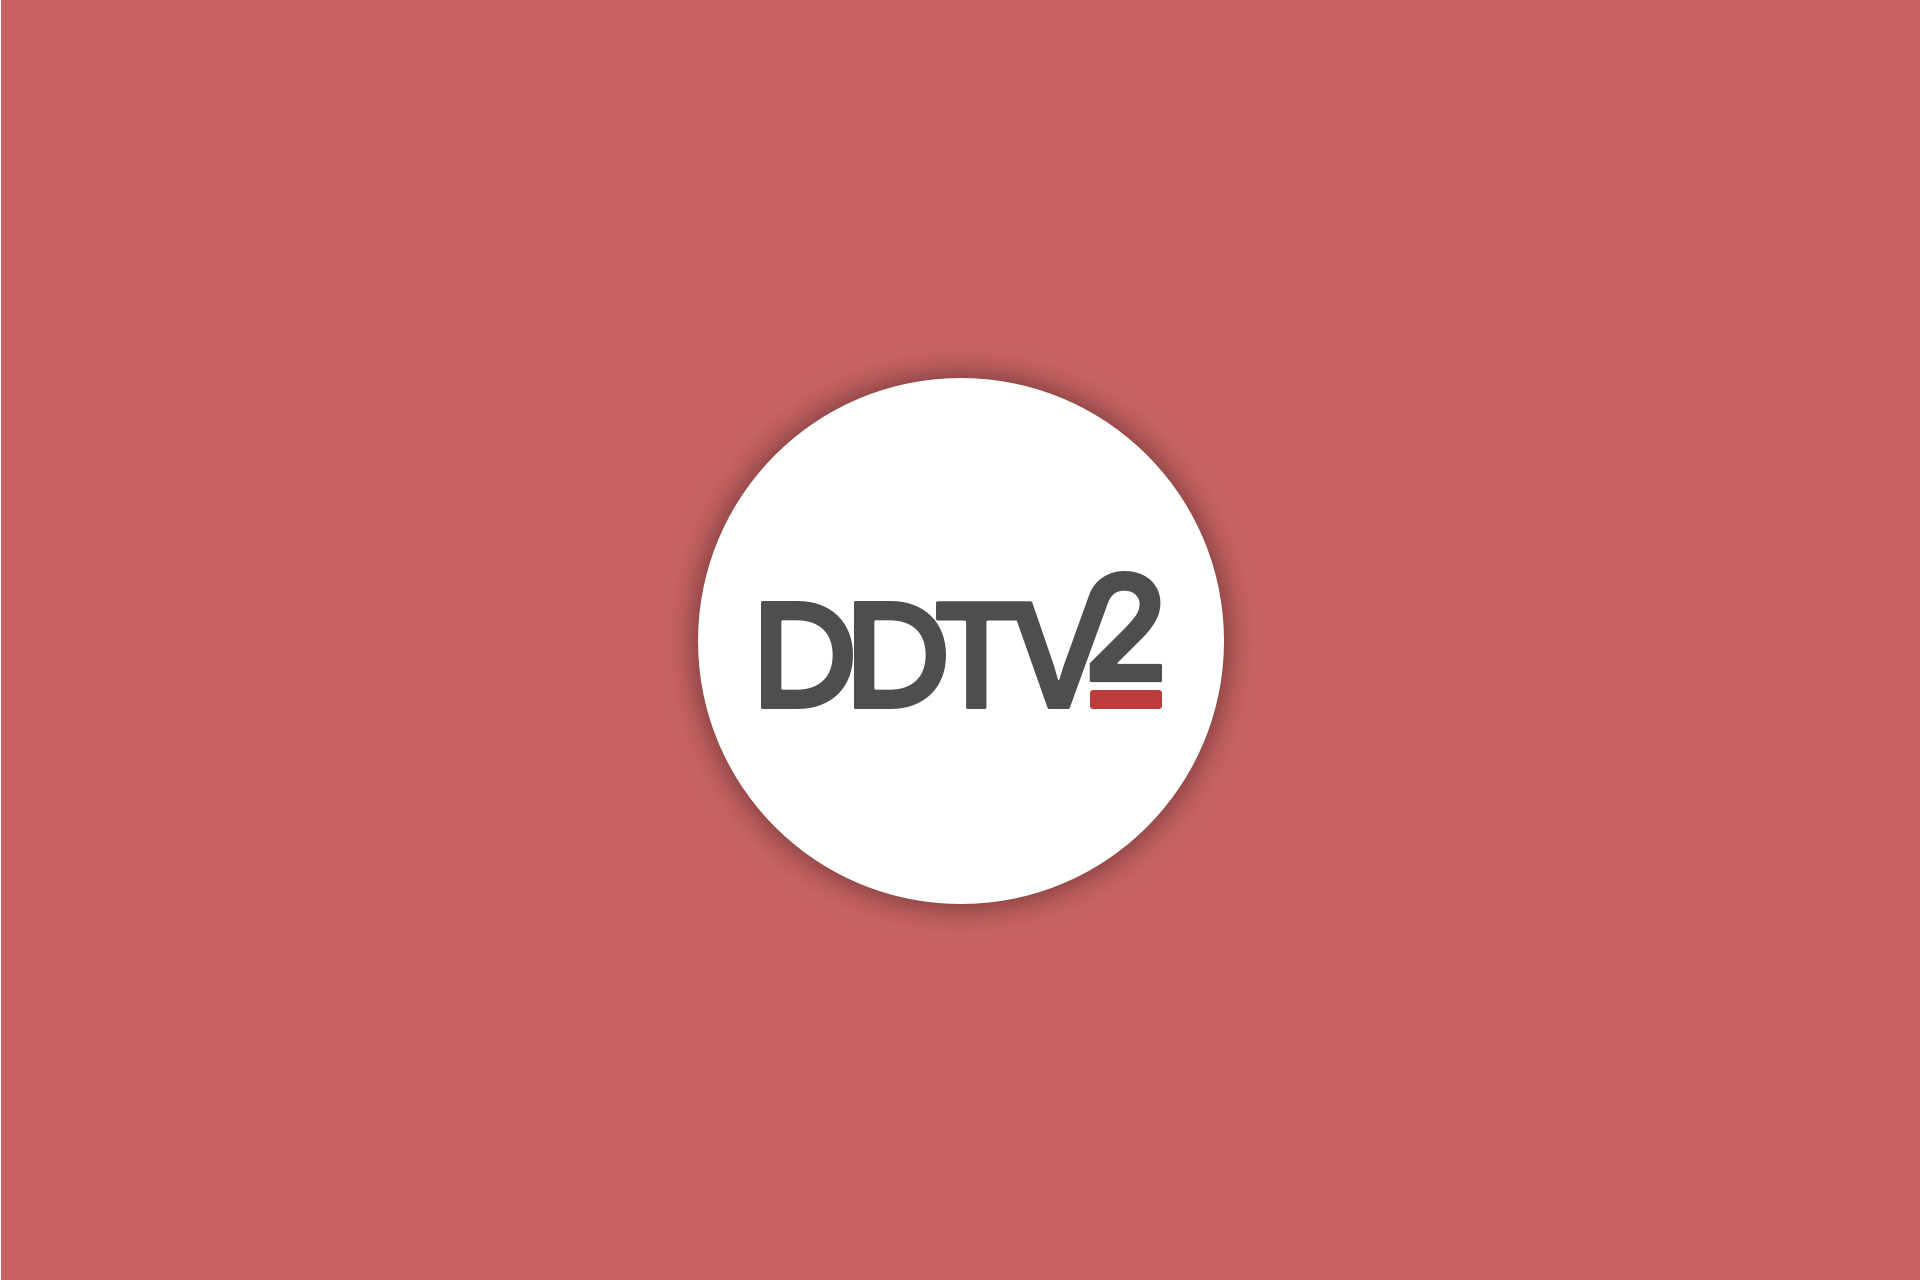 DDTV2